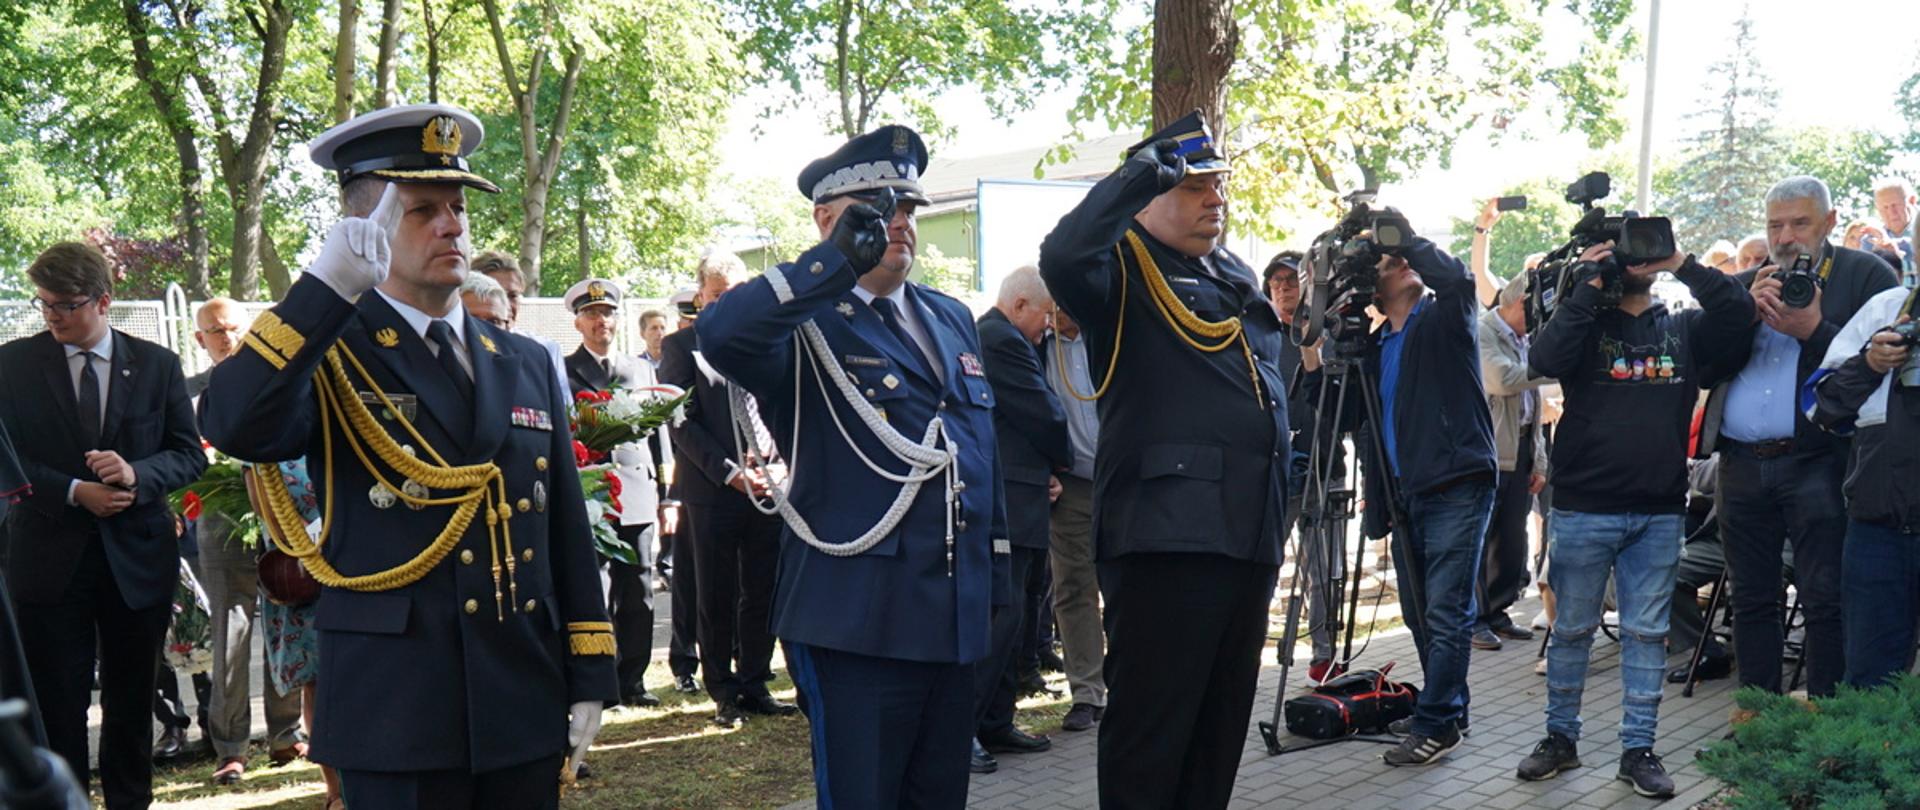 Funkcjonariusze Straży Granicznej Policji oraz Państwowej Straży Pożarnej stoją oddając honor za nimi stoją zaproszeni goście.